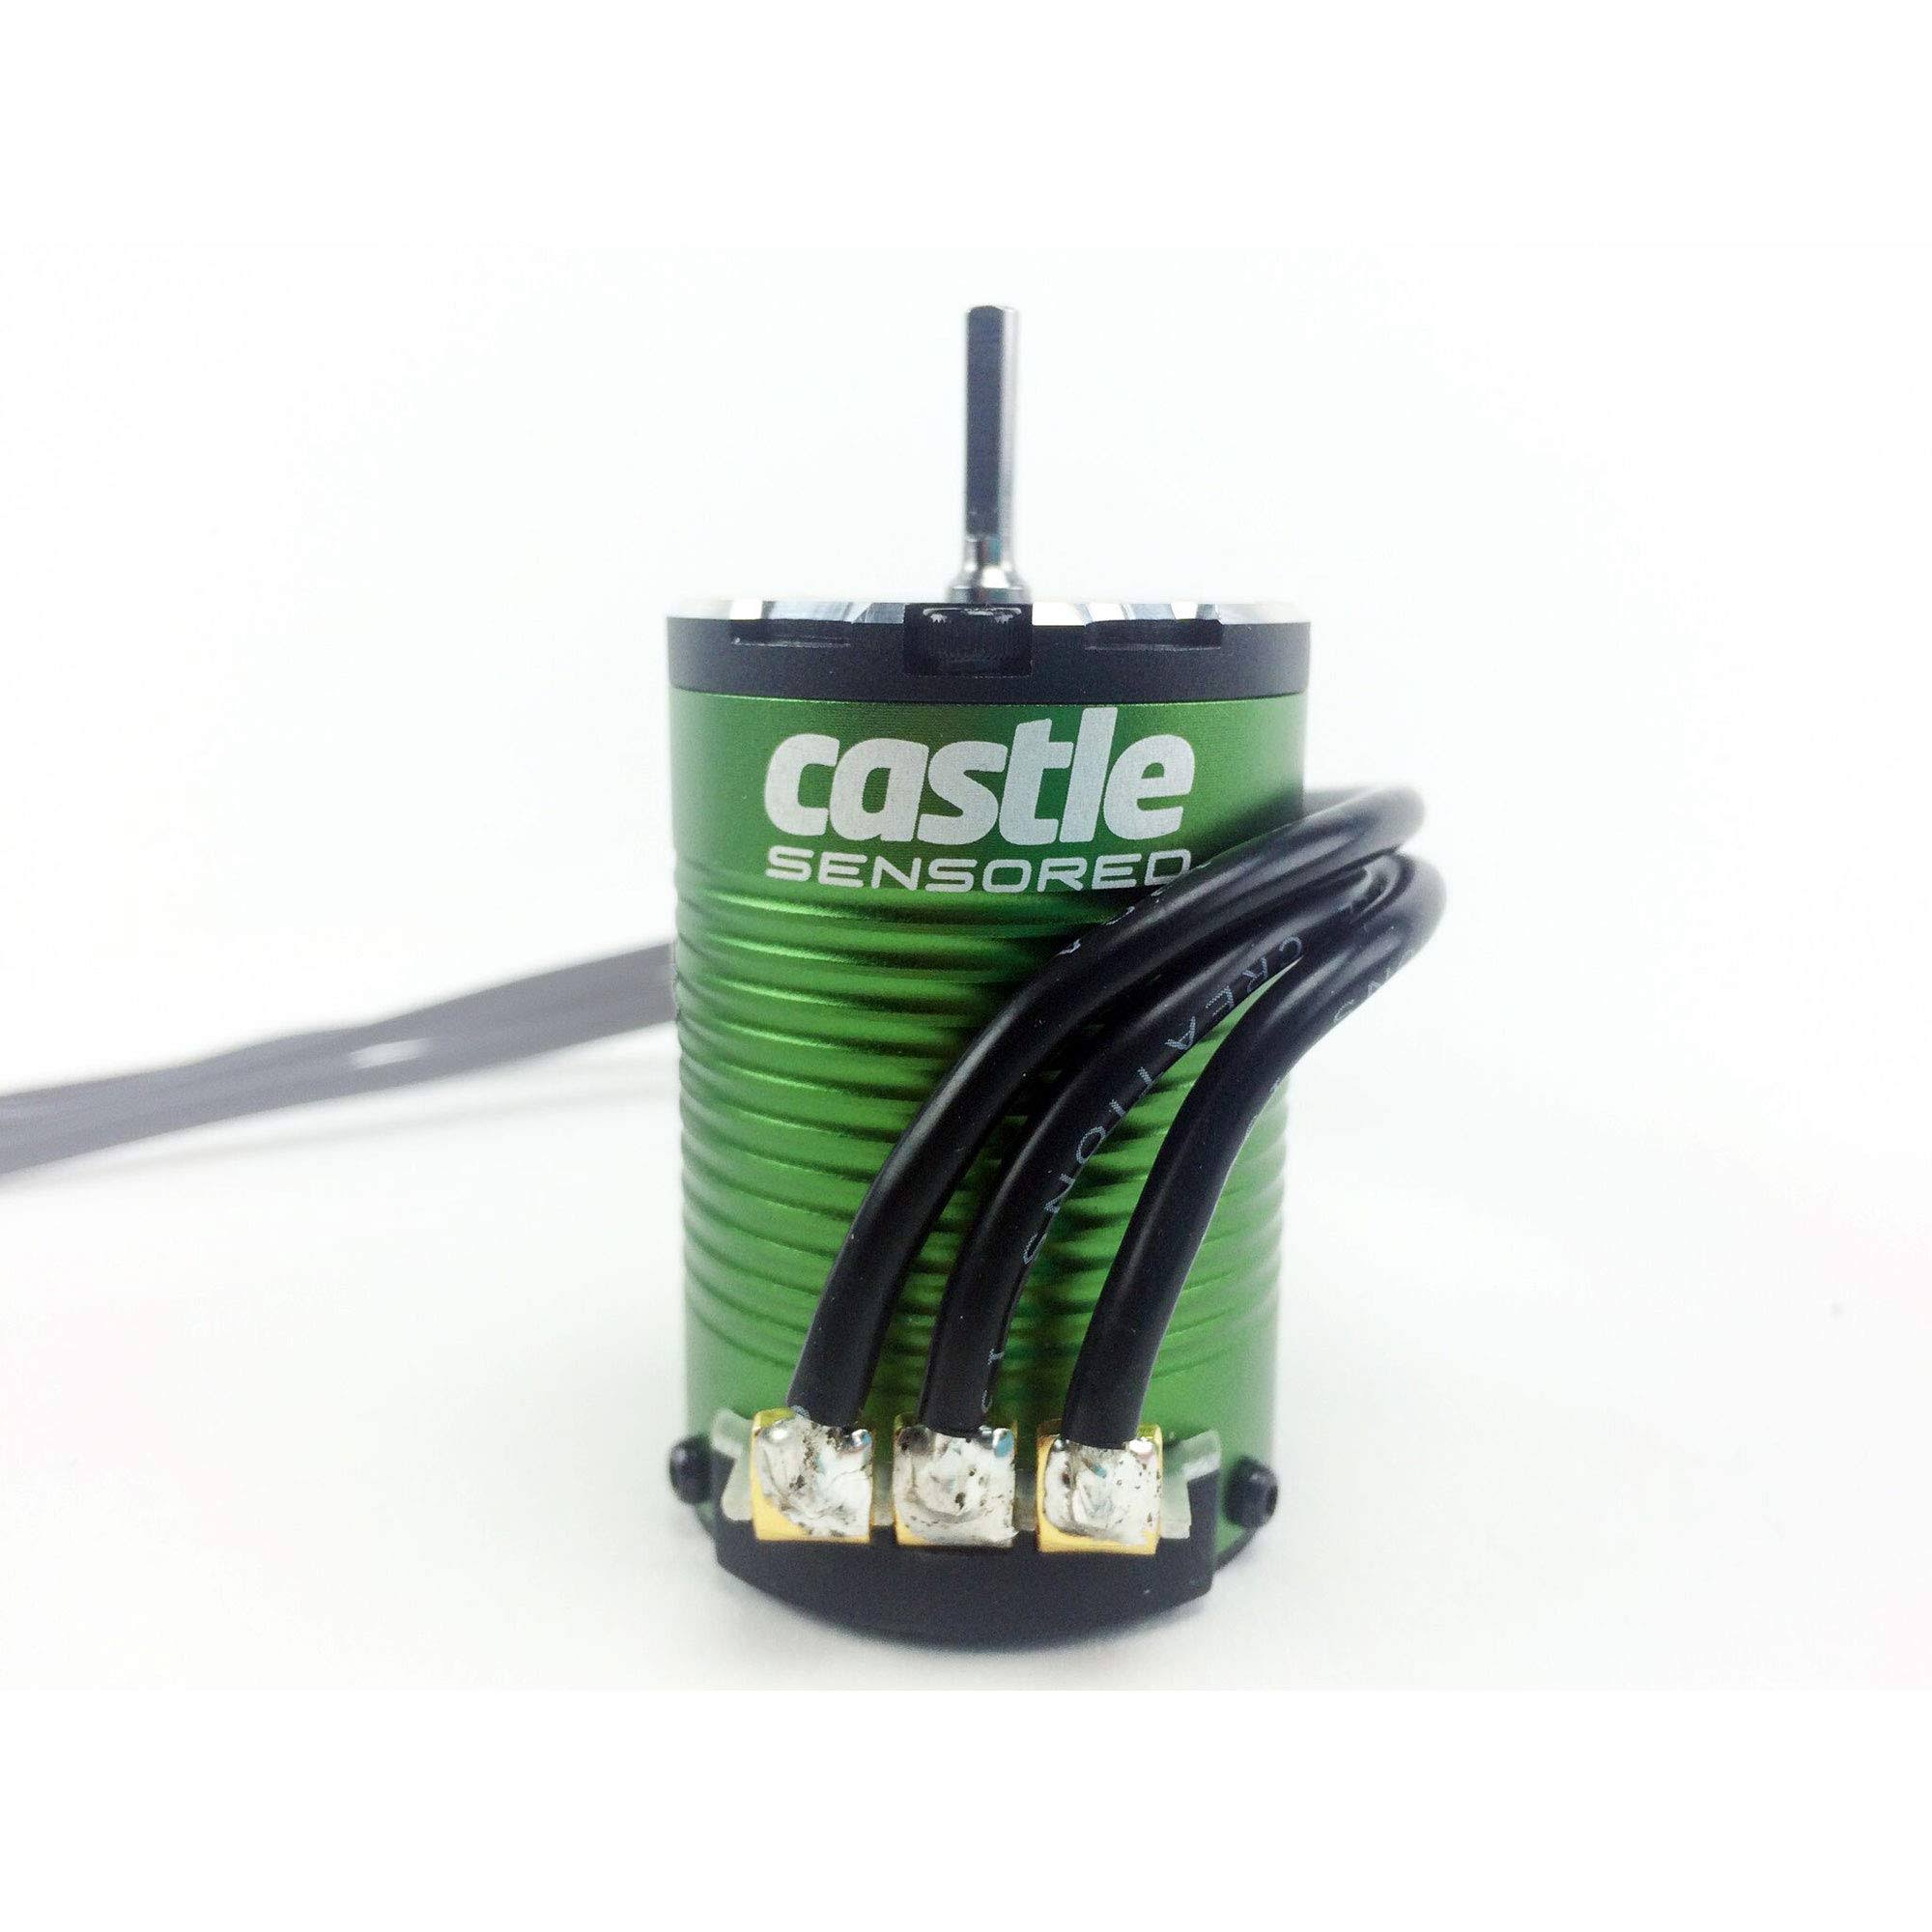 Castle Creations Sensored Brushless Motor - 4 Pole, 3.17mm, 3800KV